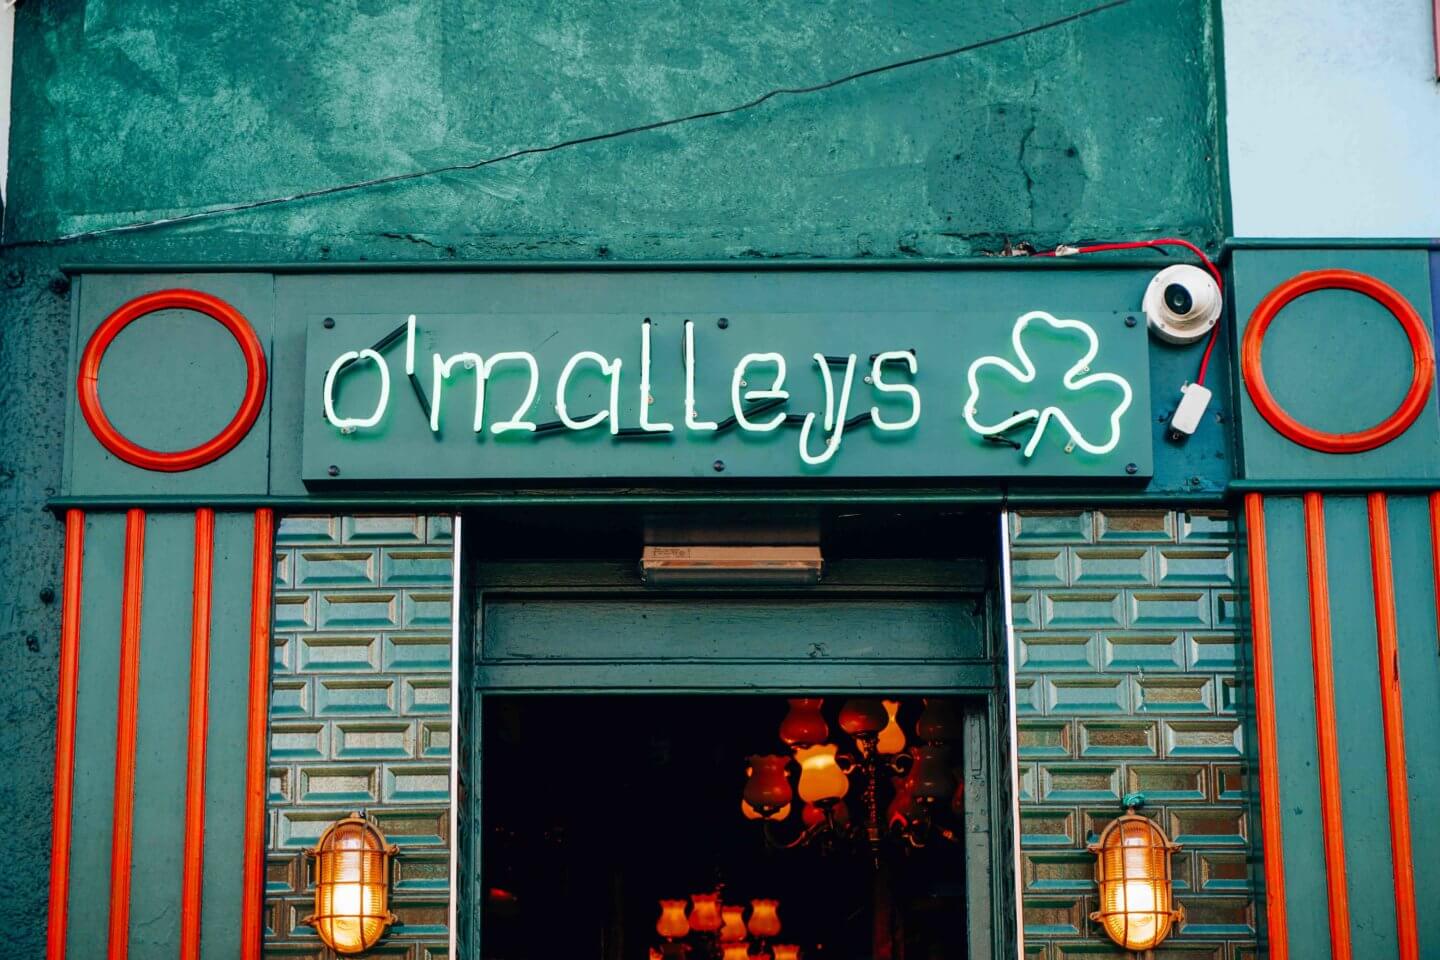 Celebrating St Patrick’s Day in Dublin - O'malleys pub